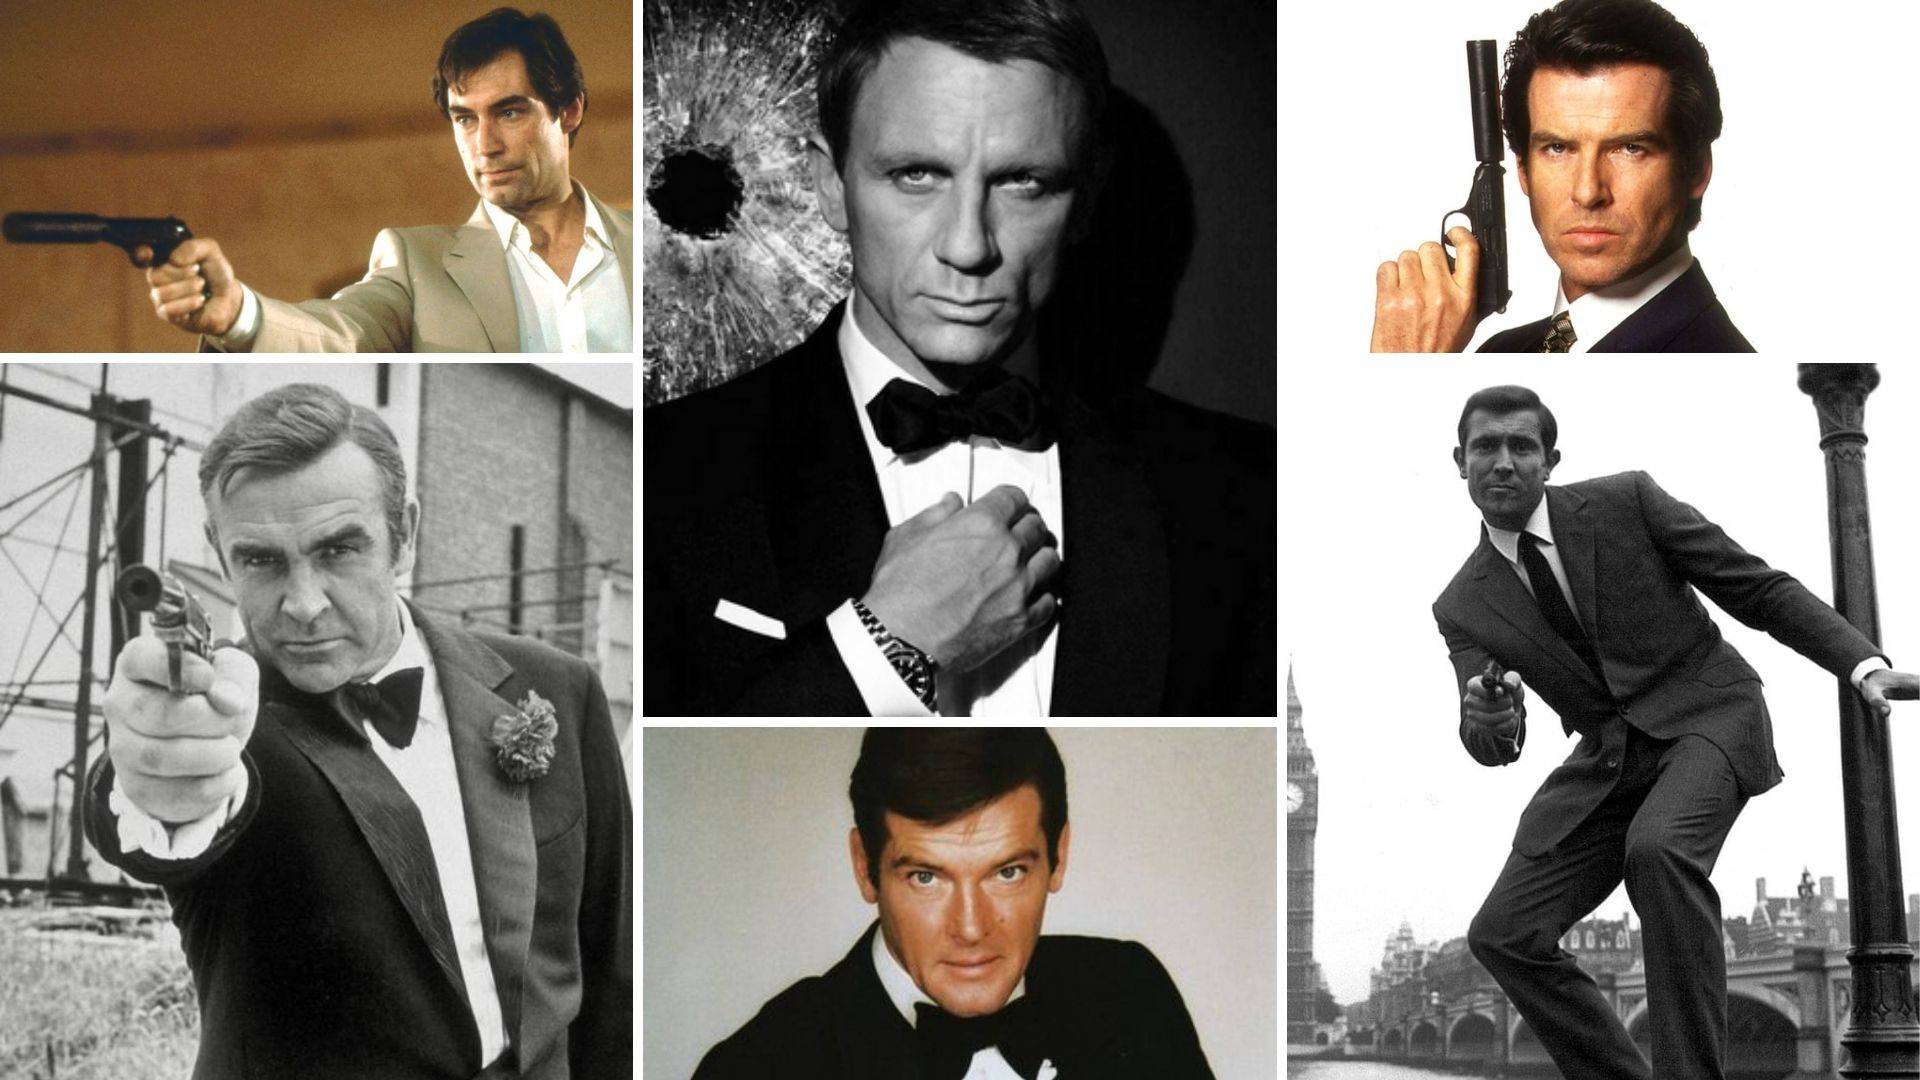 ANKETA Ovo su svi glumci koji su igrali tajnog špijuna Jamesa Bonda. Koji vam je omiljeni?